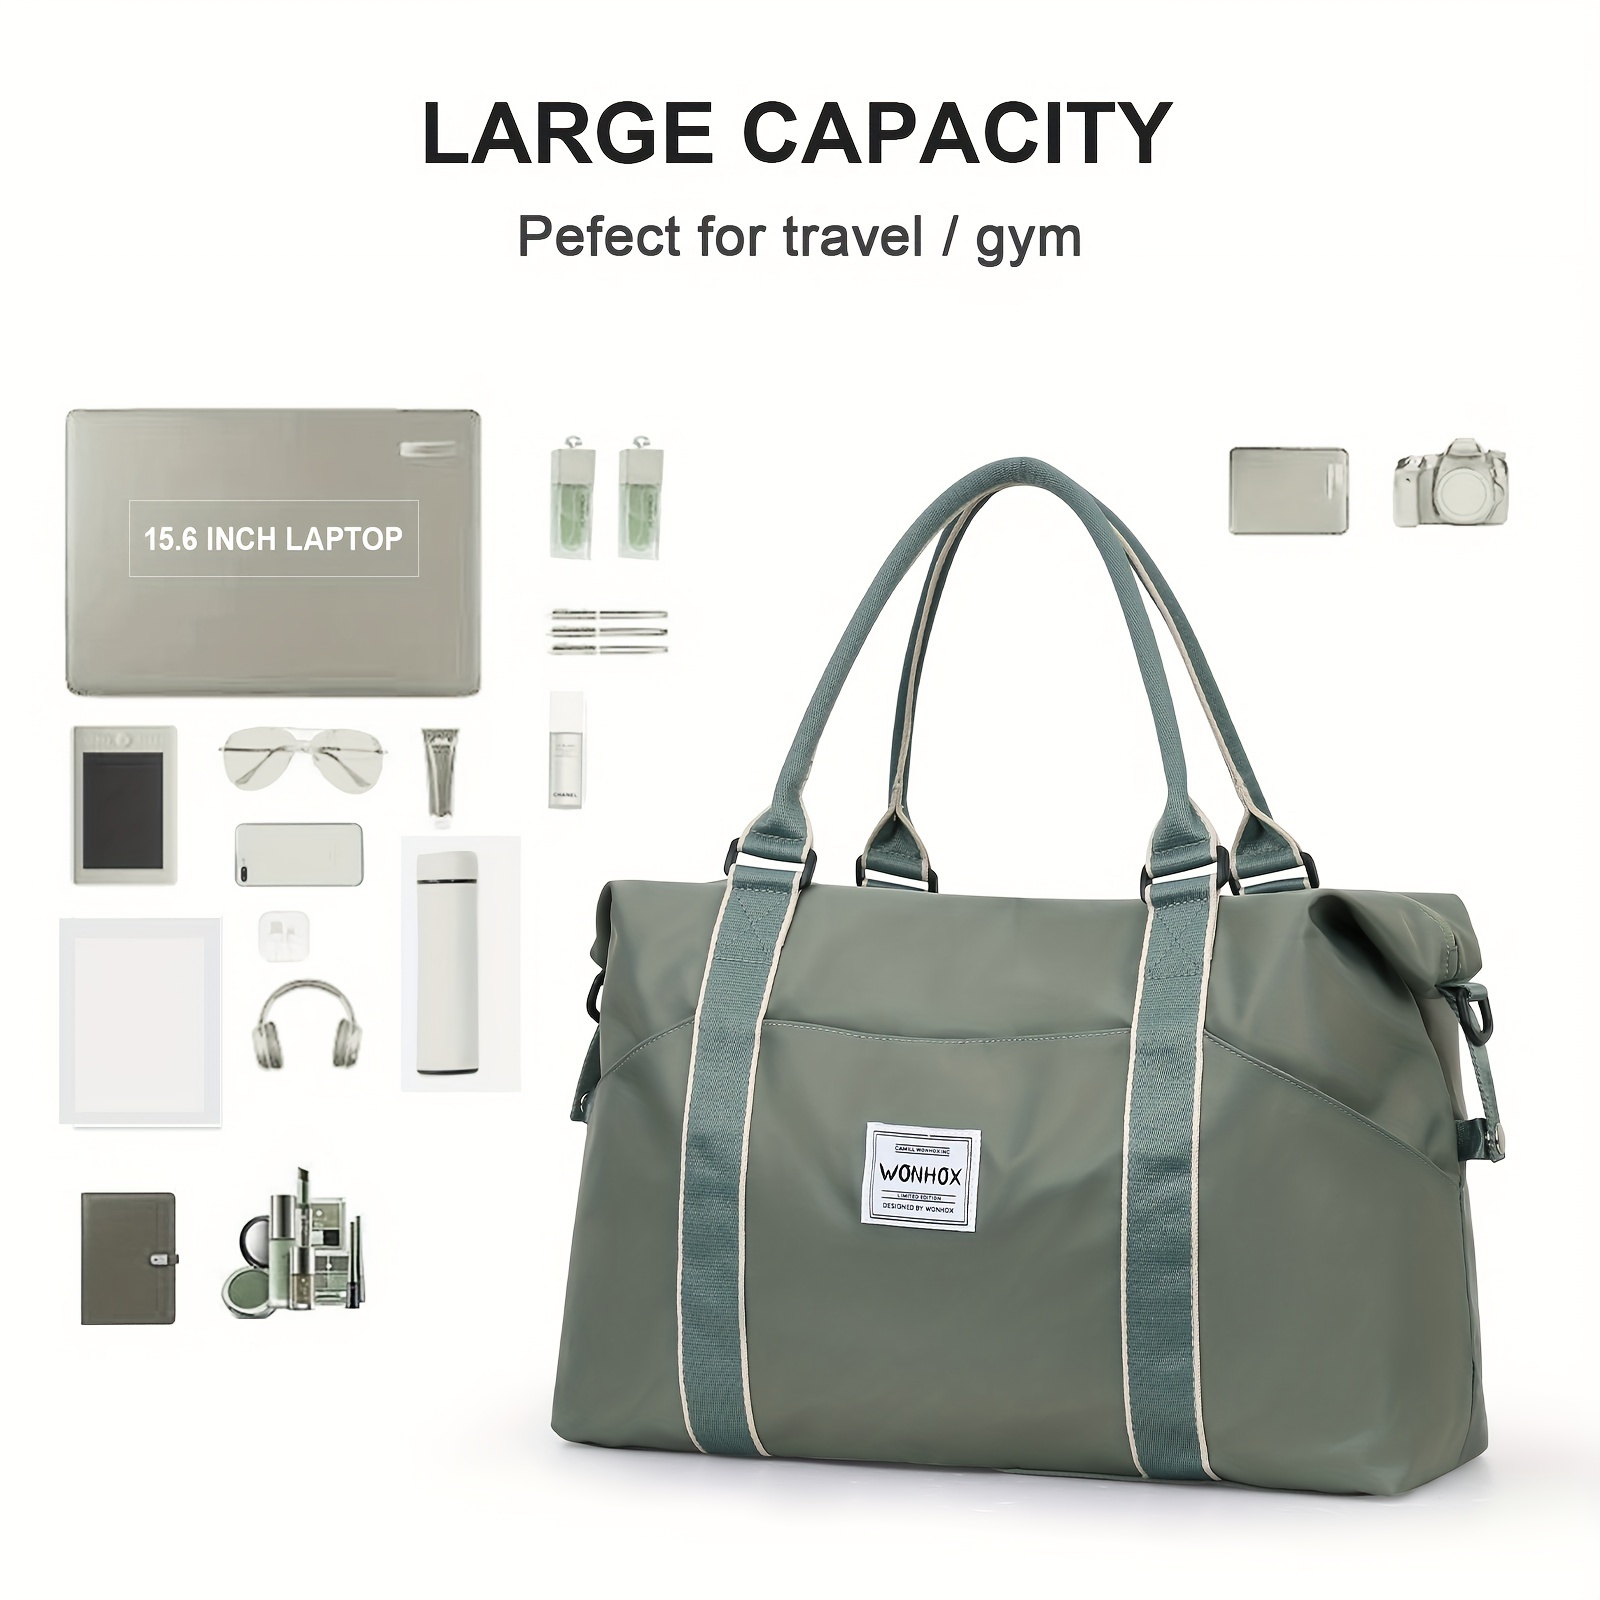 Bolsa de viaje plegable, bolsa de equipaje de mano impermeable, bolsas de  viaje bolsa deportiva para mujeres y hombres para viajes de fin de semana